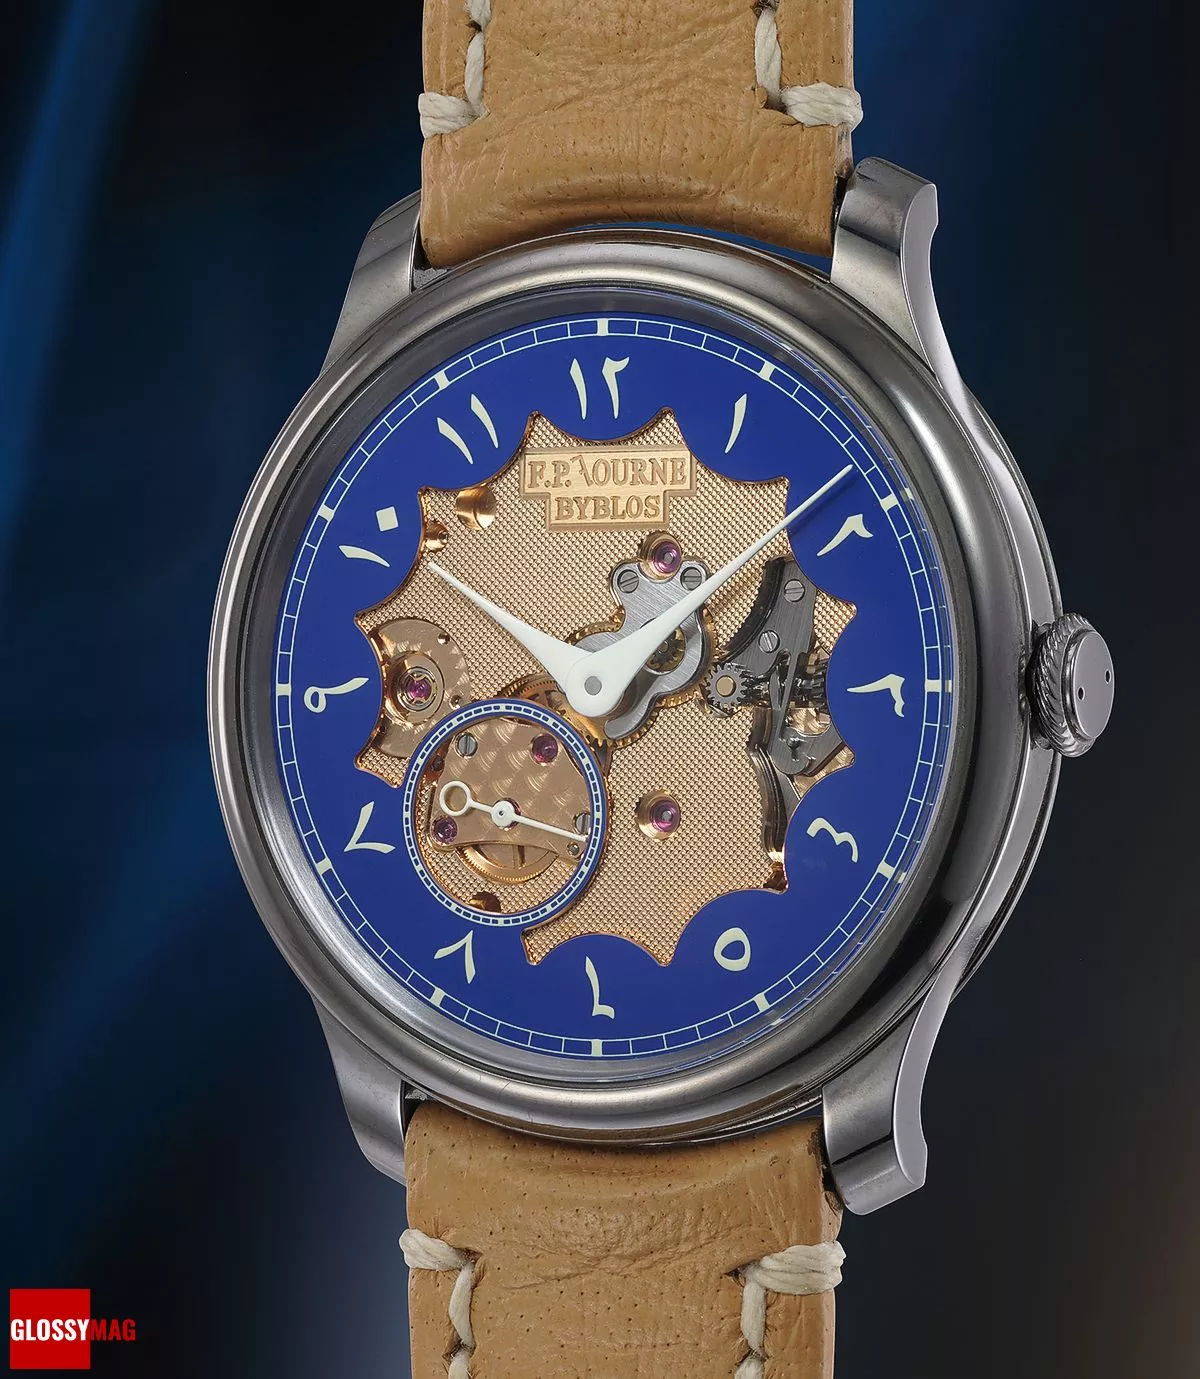 Часы F.P.Journe Chronomètre Bleu — Byblos в корпусе из тантала с ажурным циферблатом, позволяющим увидеть механизм, и арабскими цифрами